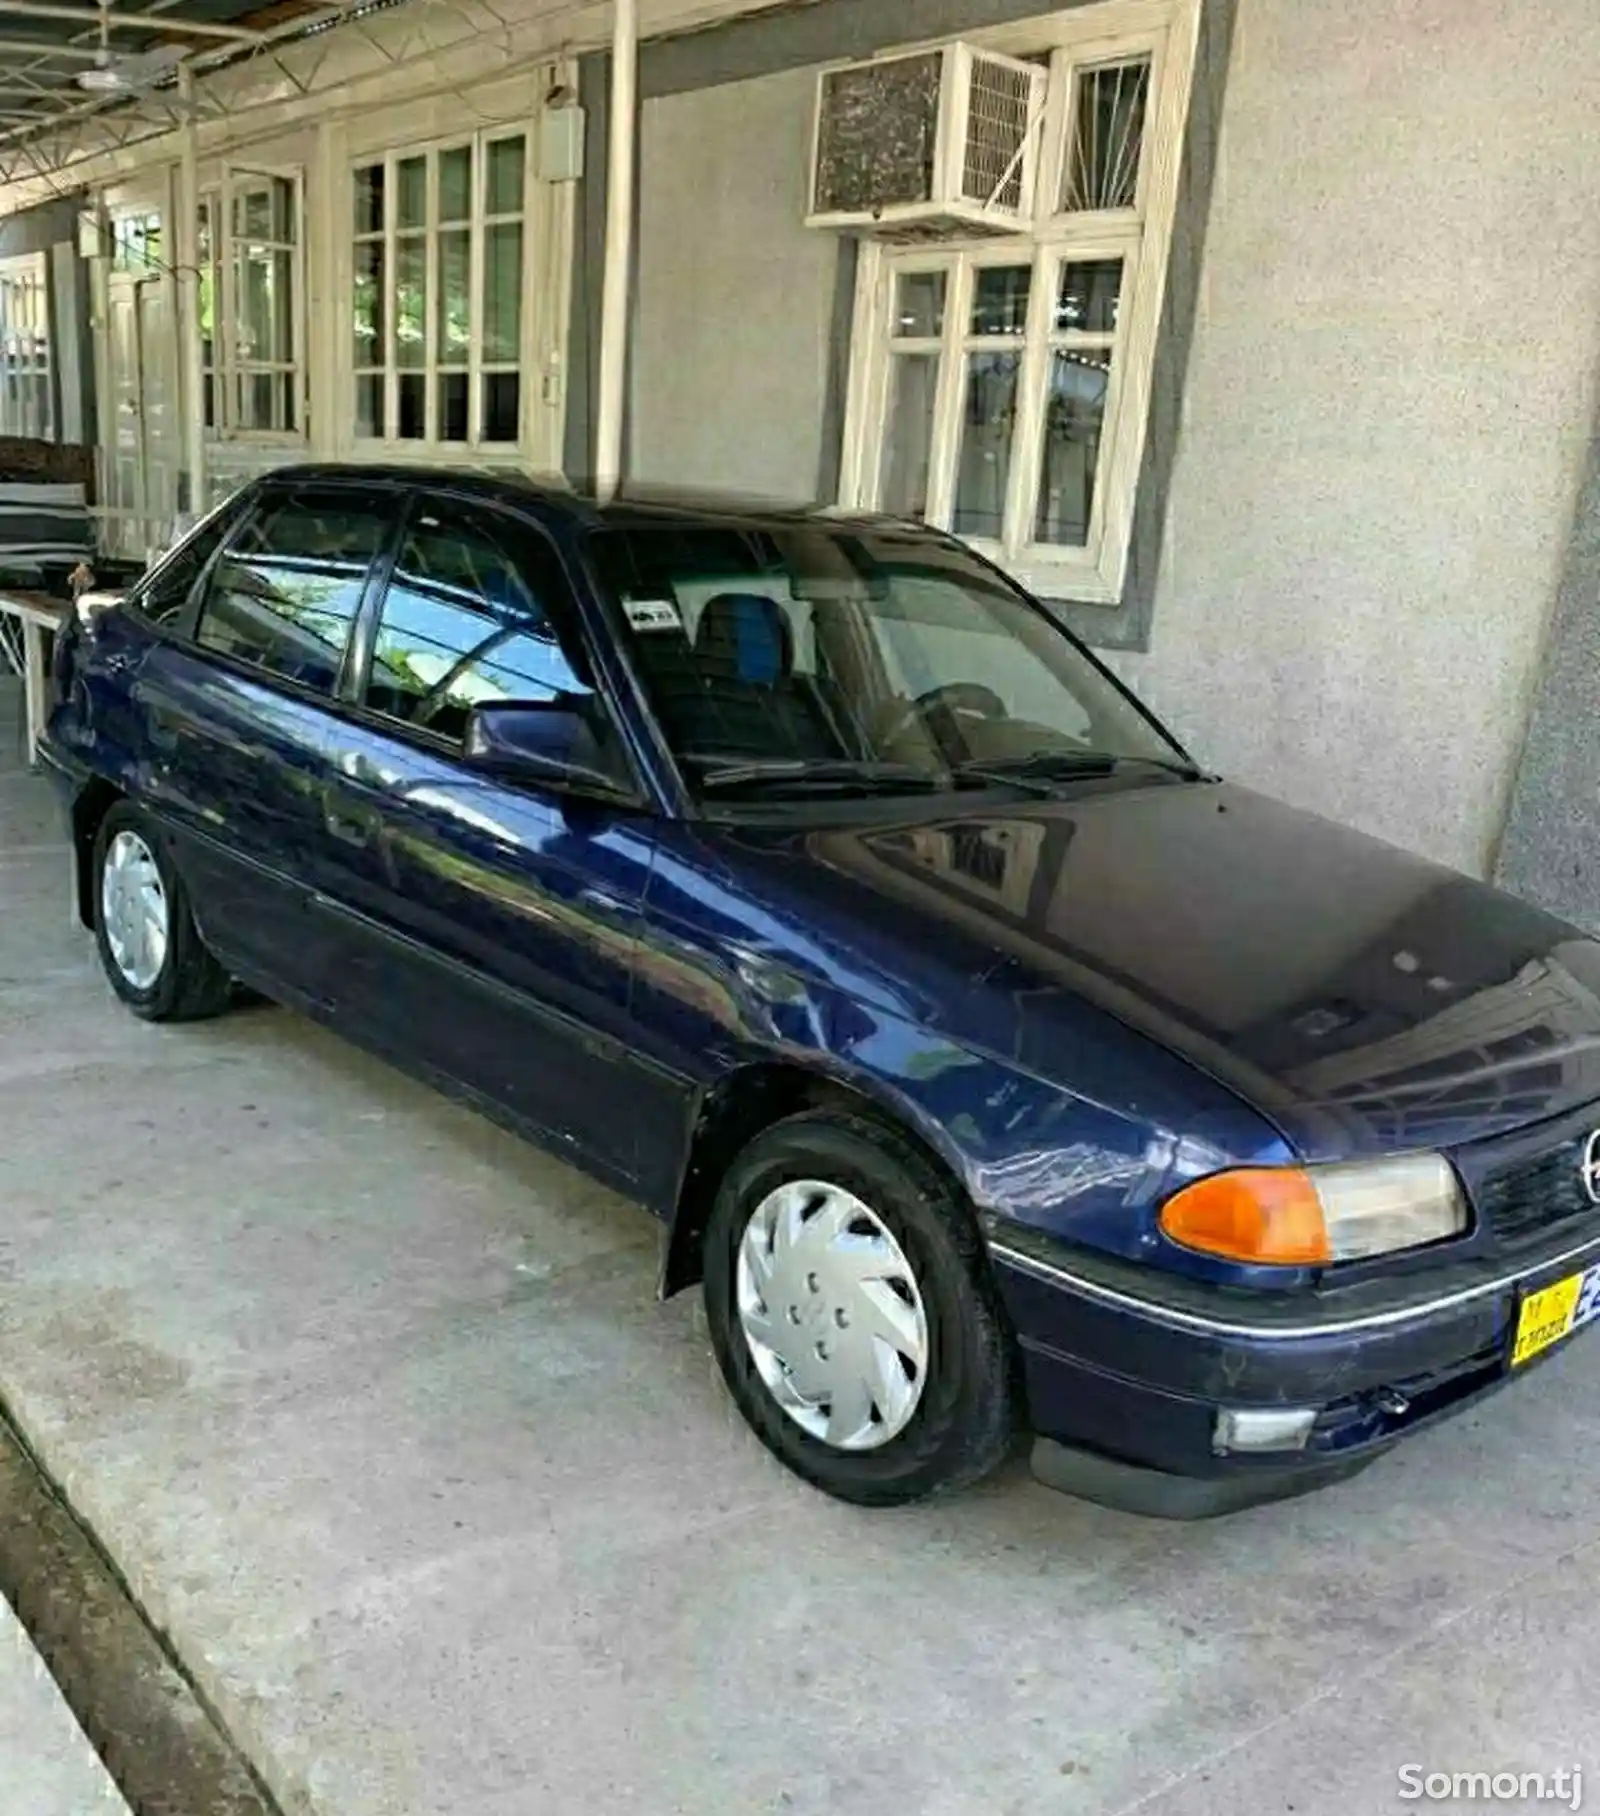 Opel Astra F, 1993-1